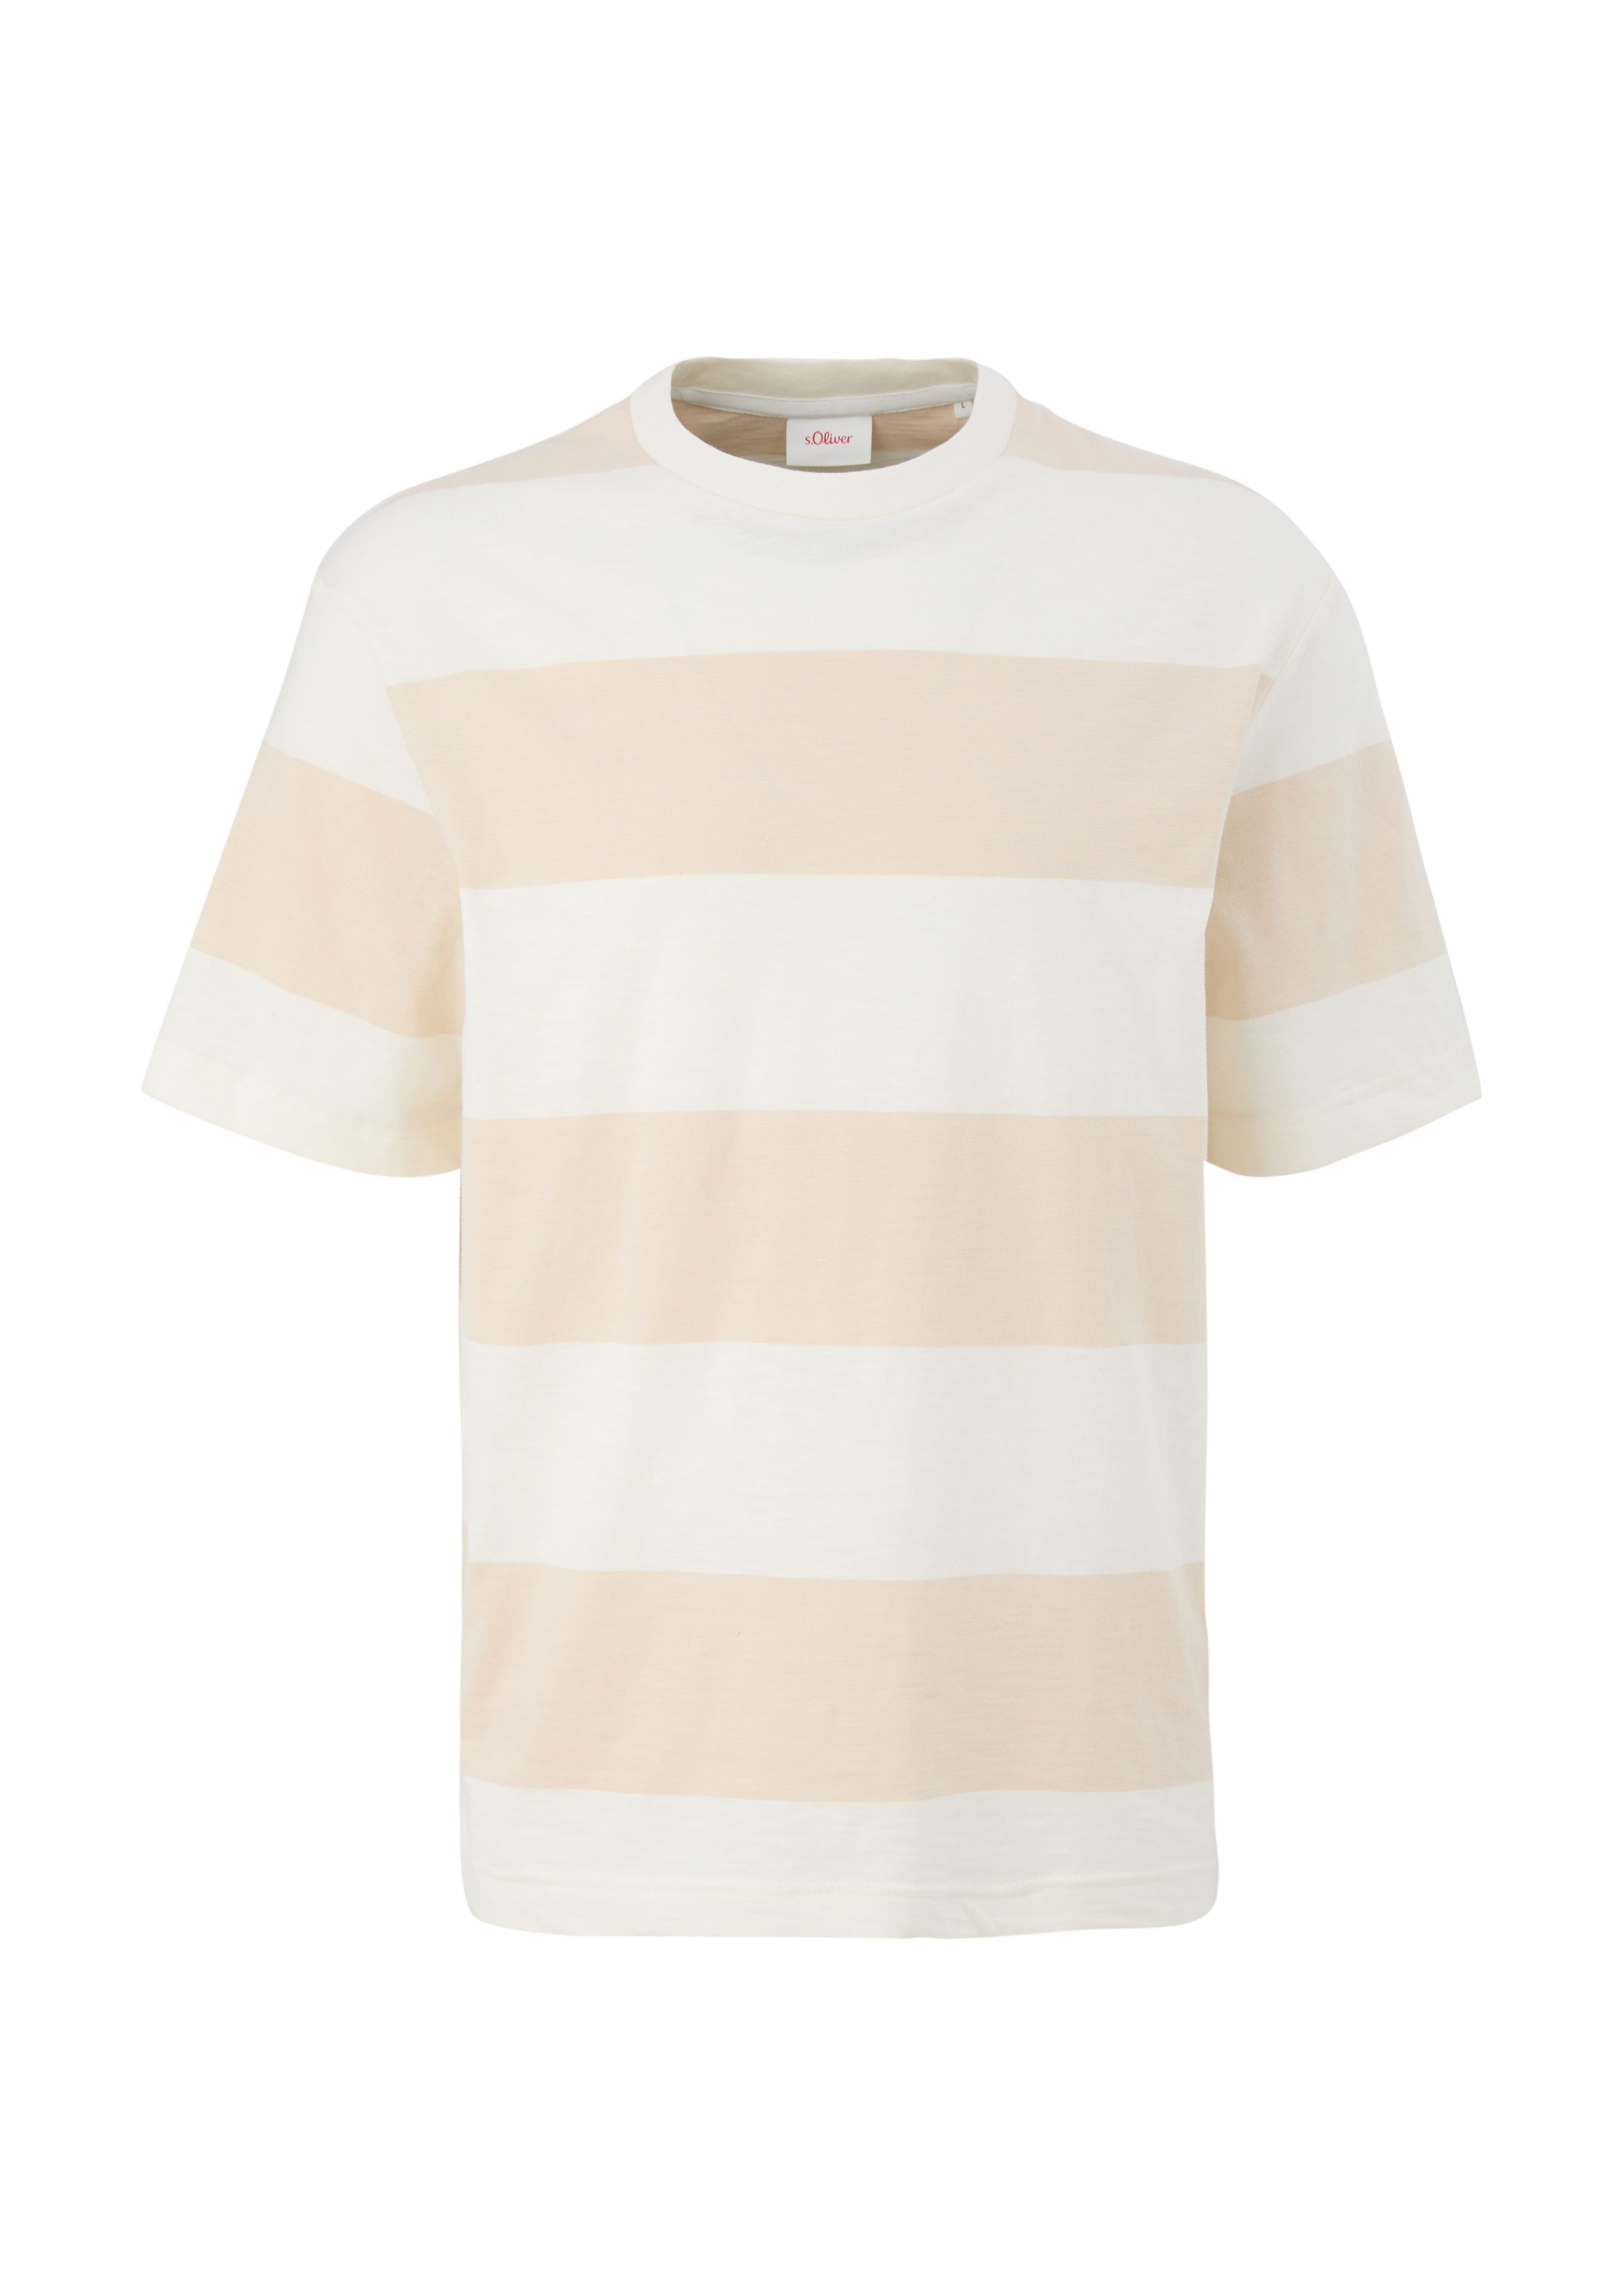 mit beige Kurzarmshirt T-Shirt s.Oliver Blockstreifen Logo